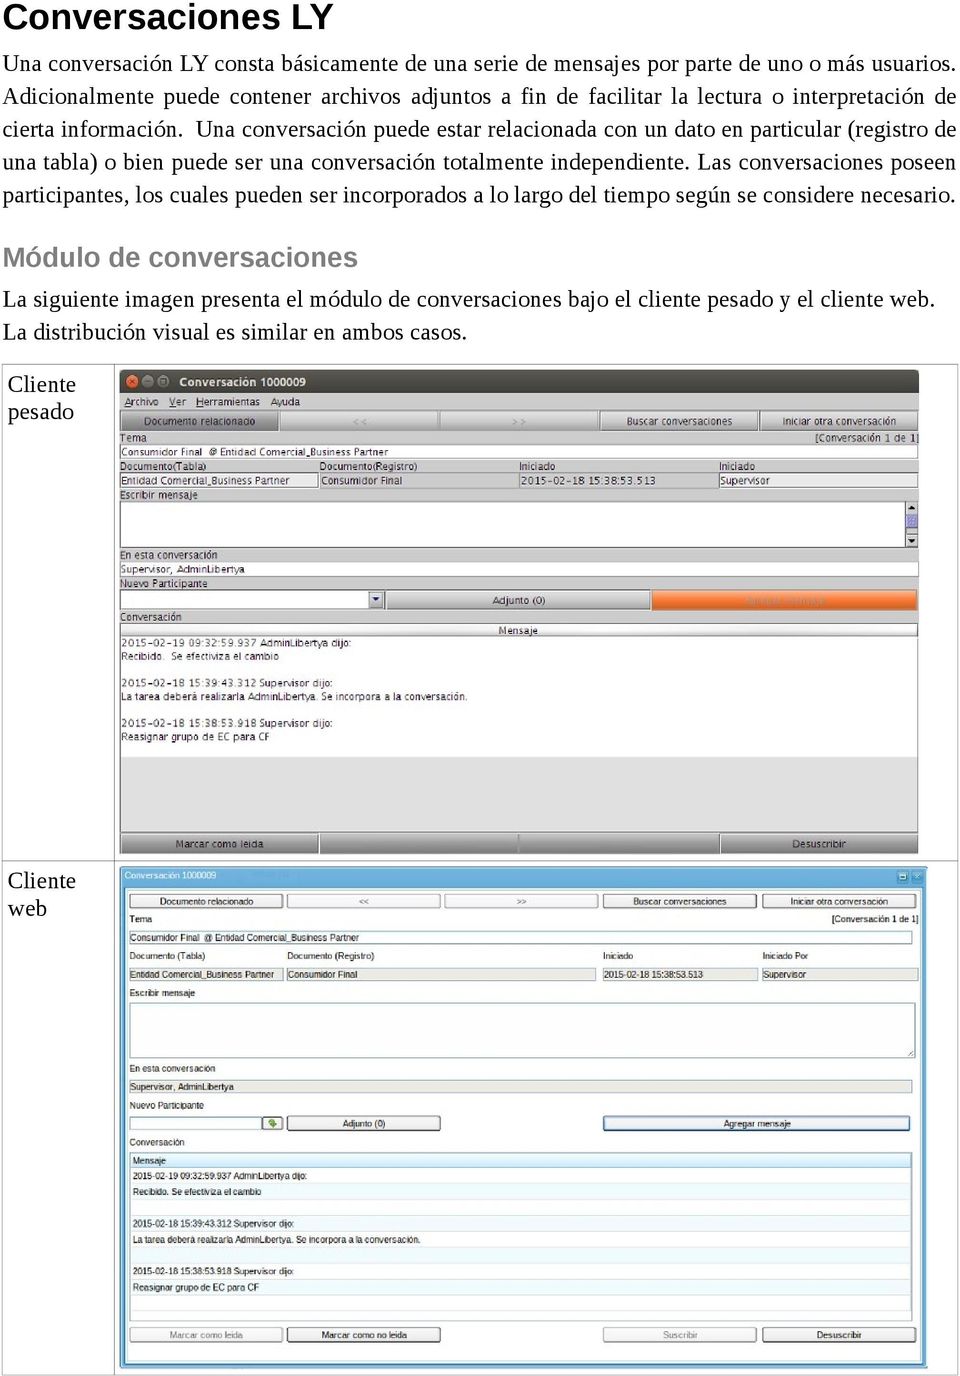 Una conversación puede estar relacionada con un dato en particular (registro de una tabla) o bien puede ser una conversación totalmente independiente.